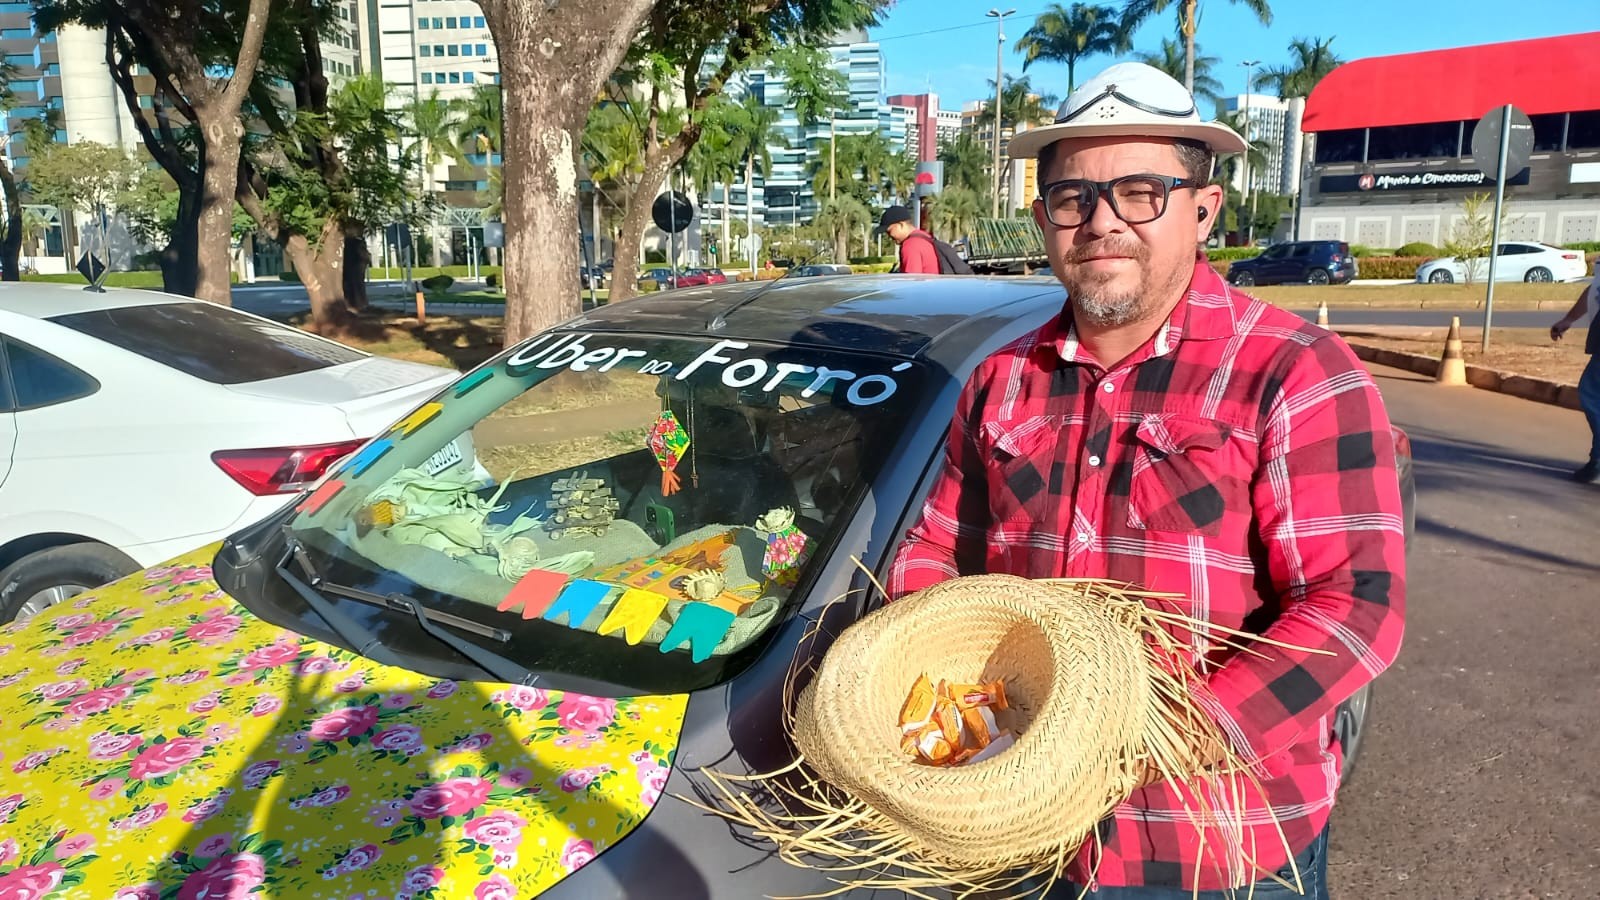 'Uber do forró': Motorista de aplicativo oferece viagens em clima de festa junina